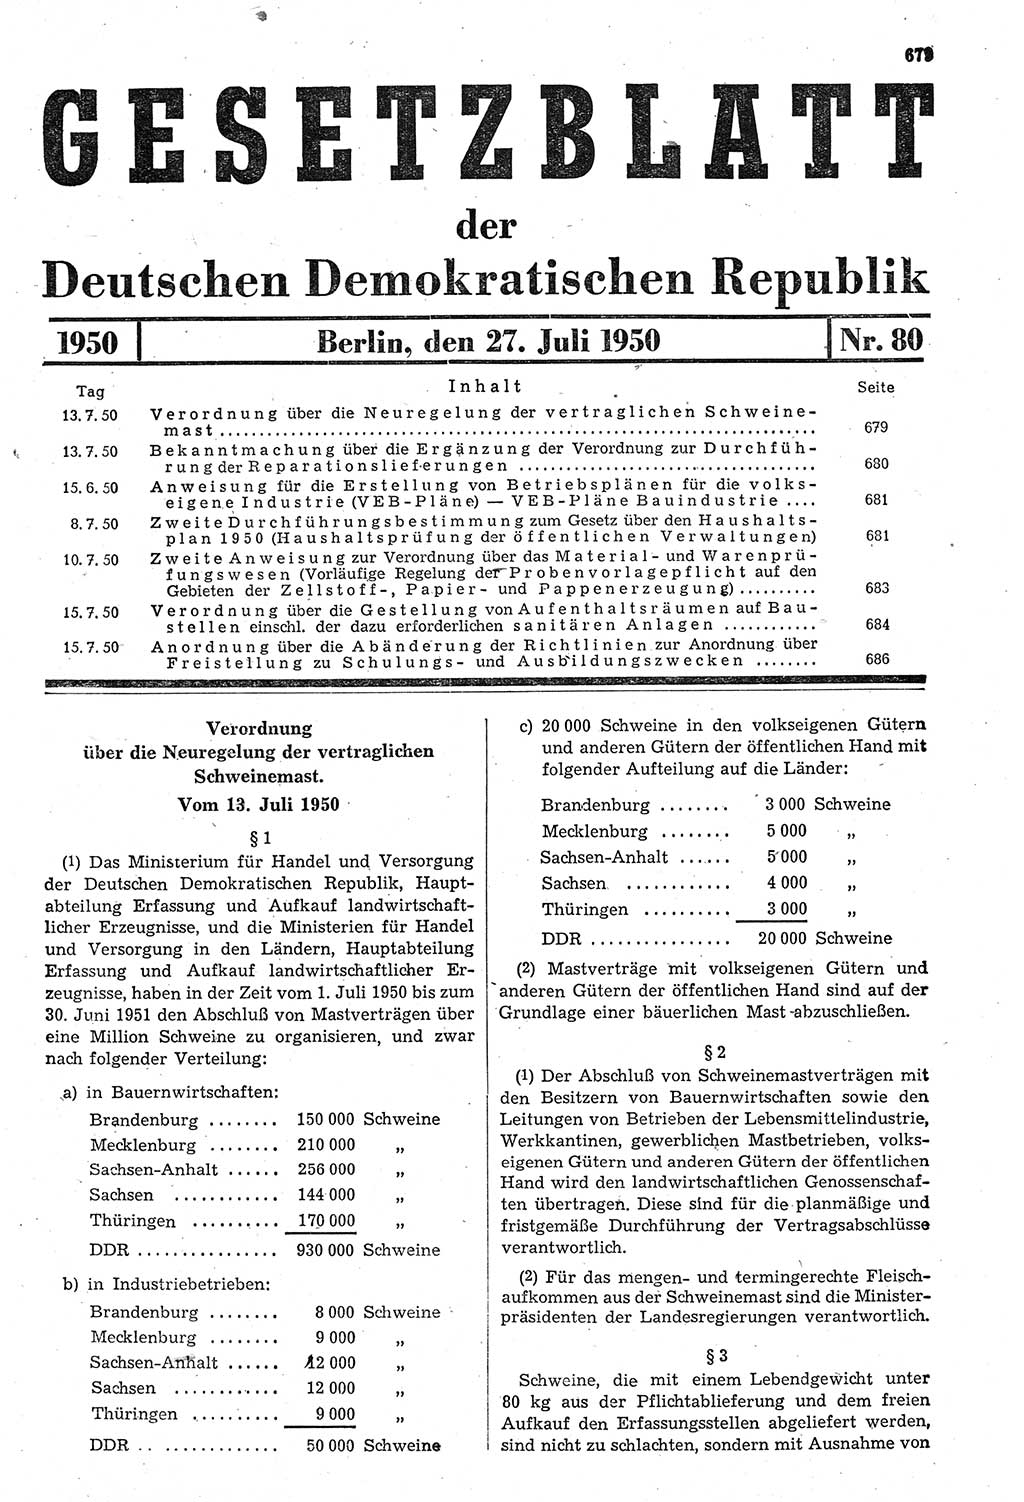 Gesetzblatt (GBl.) der Deutschen Demokratischen Republik (DDR) 1950, Seite 679 (GBl. DDR 1950, S. 679)